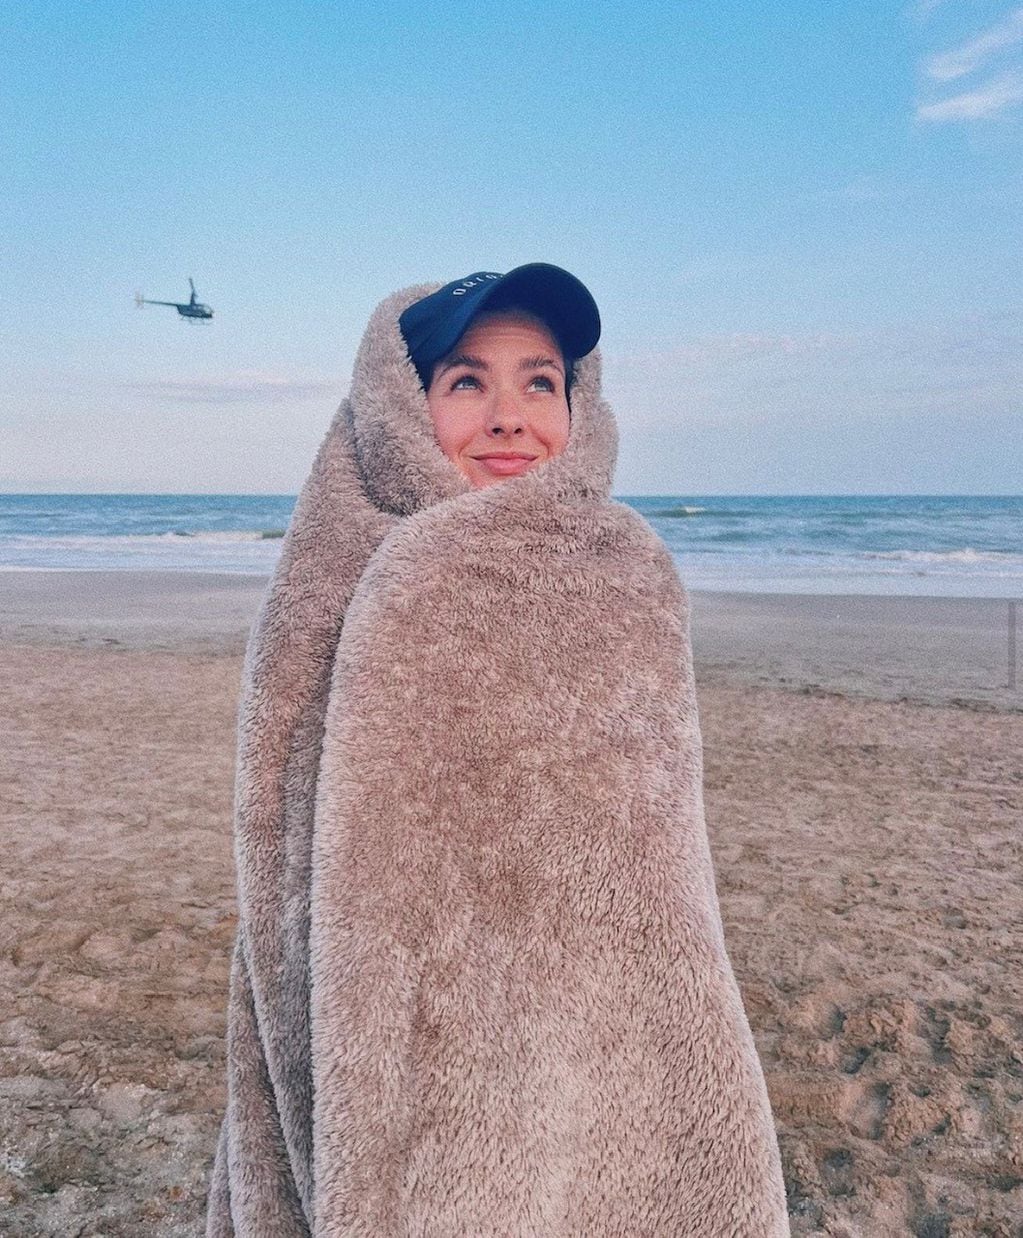 La manta teddy que usó la China para combatir el viento en la playa pinamarense.